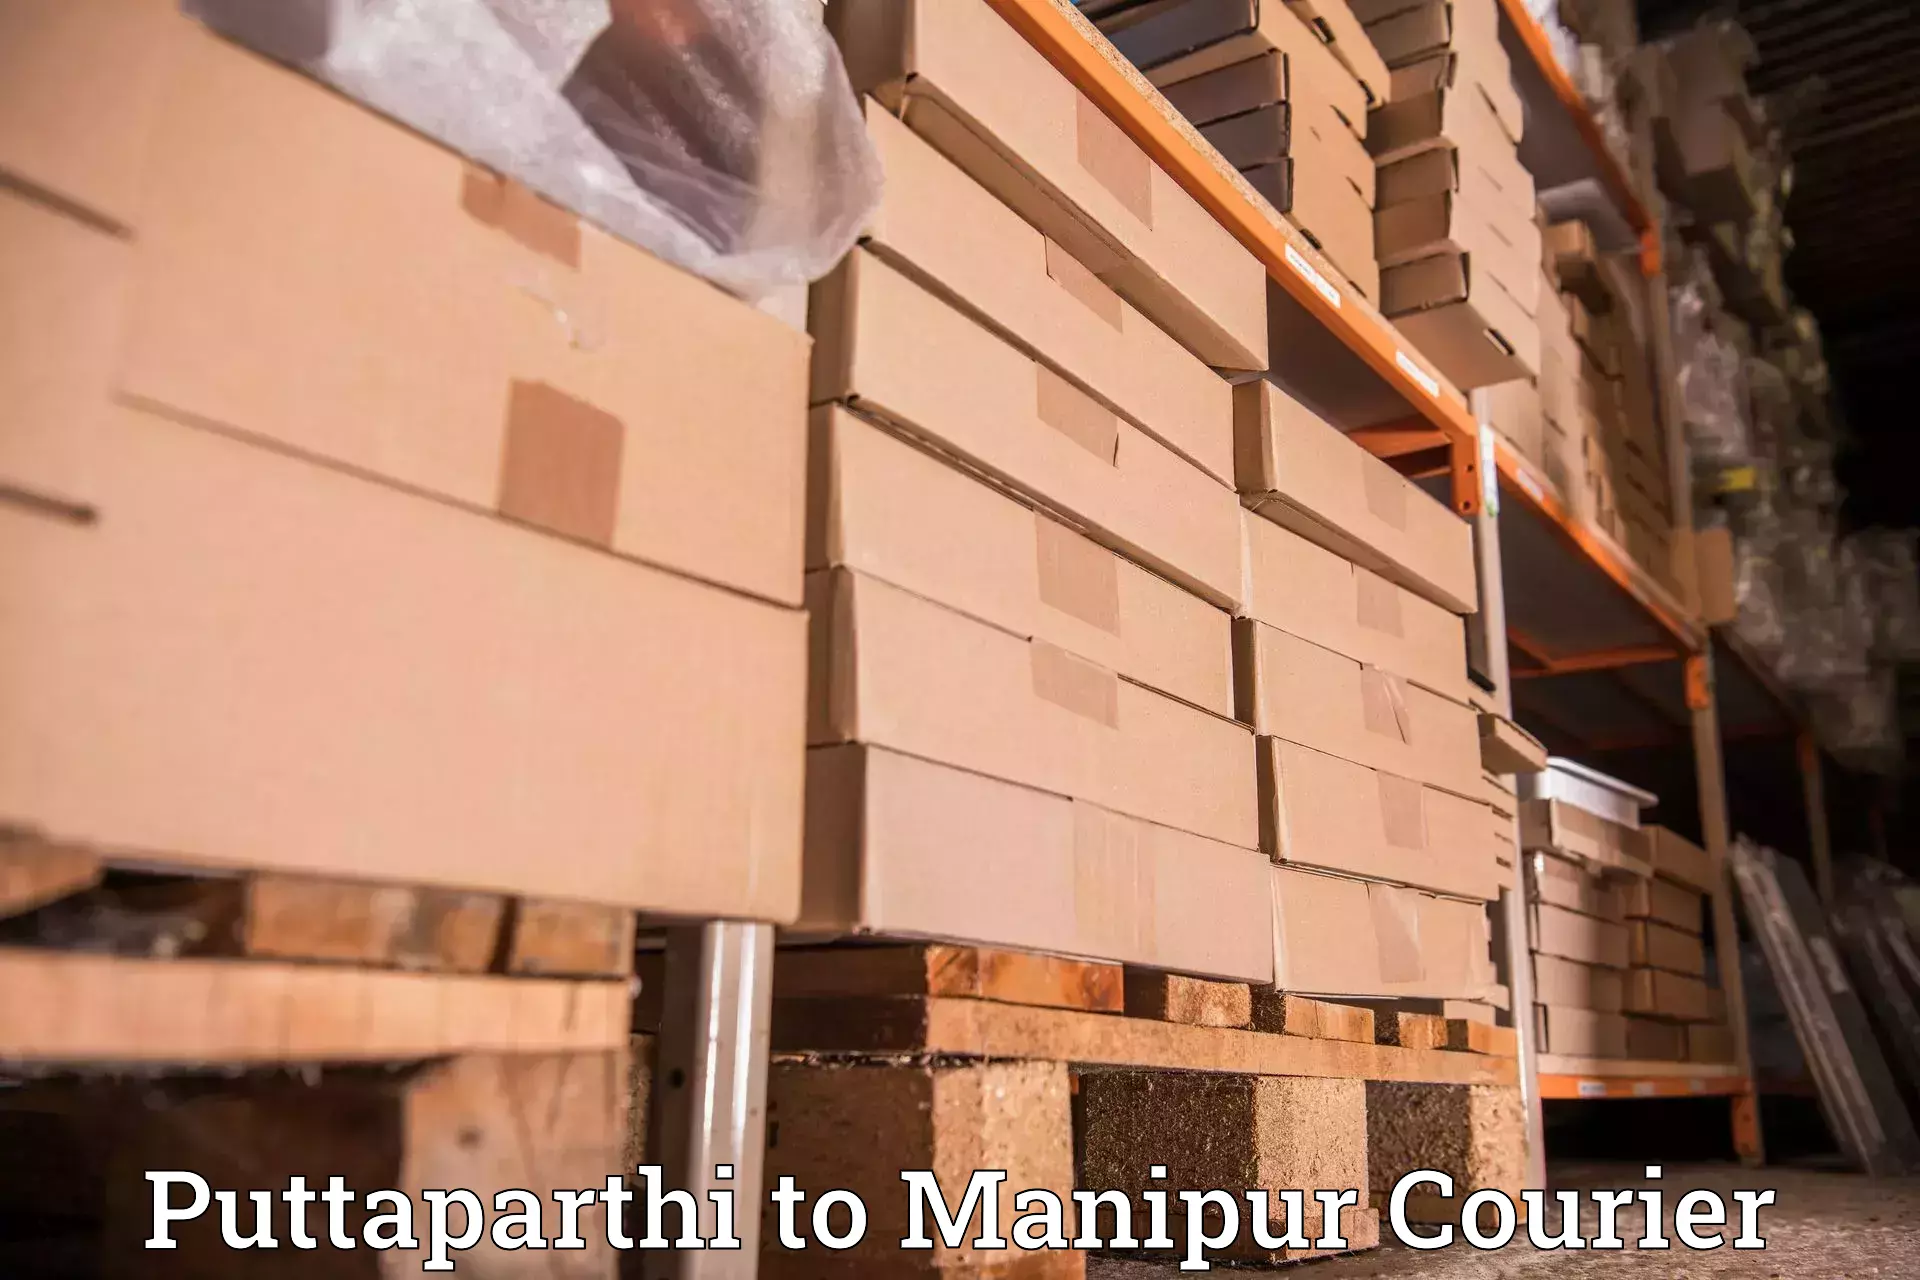 Cargo delivery service Puttaparthi to Kanti